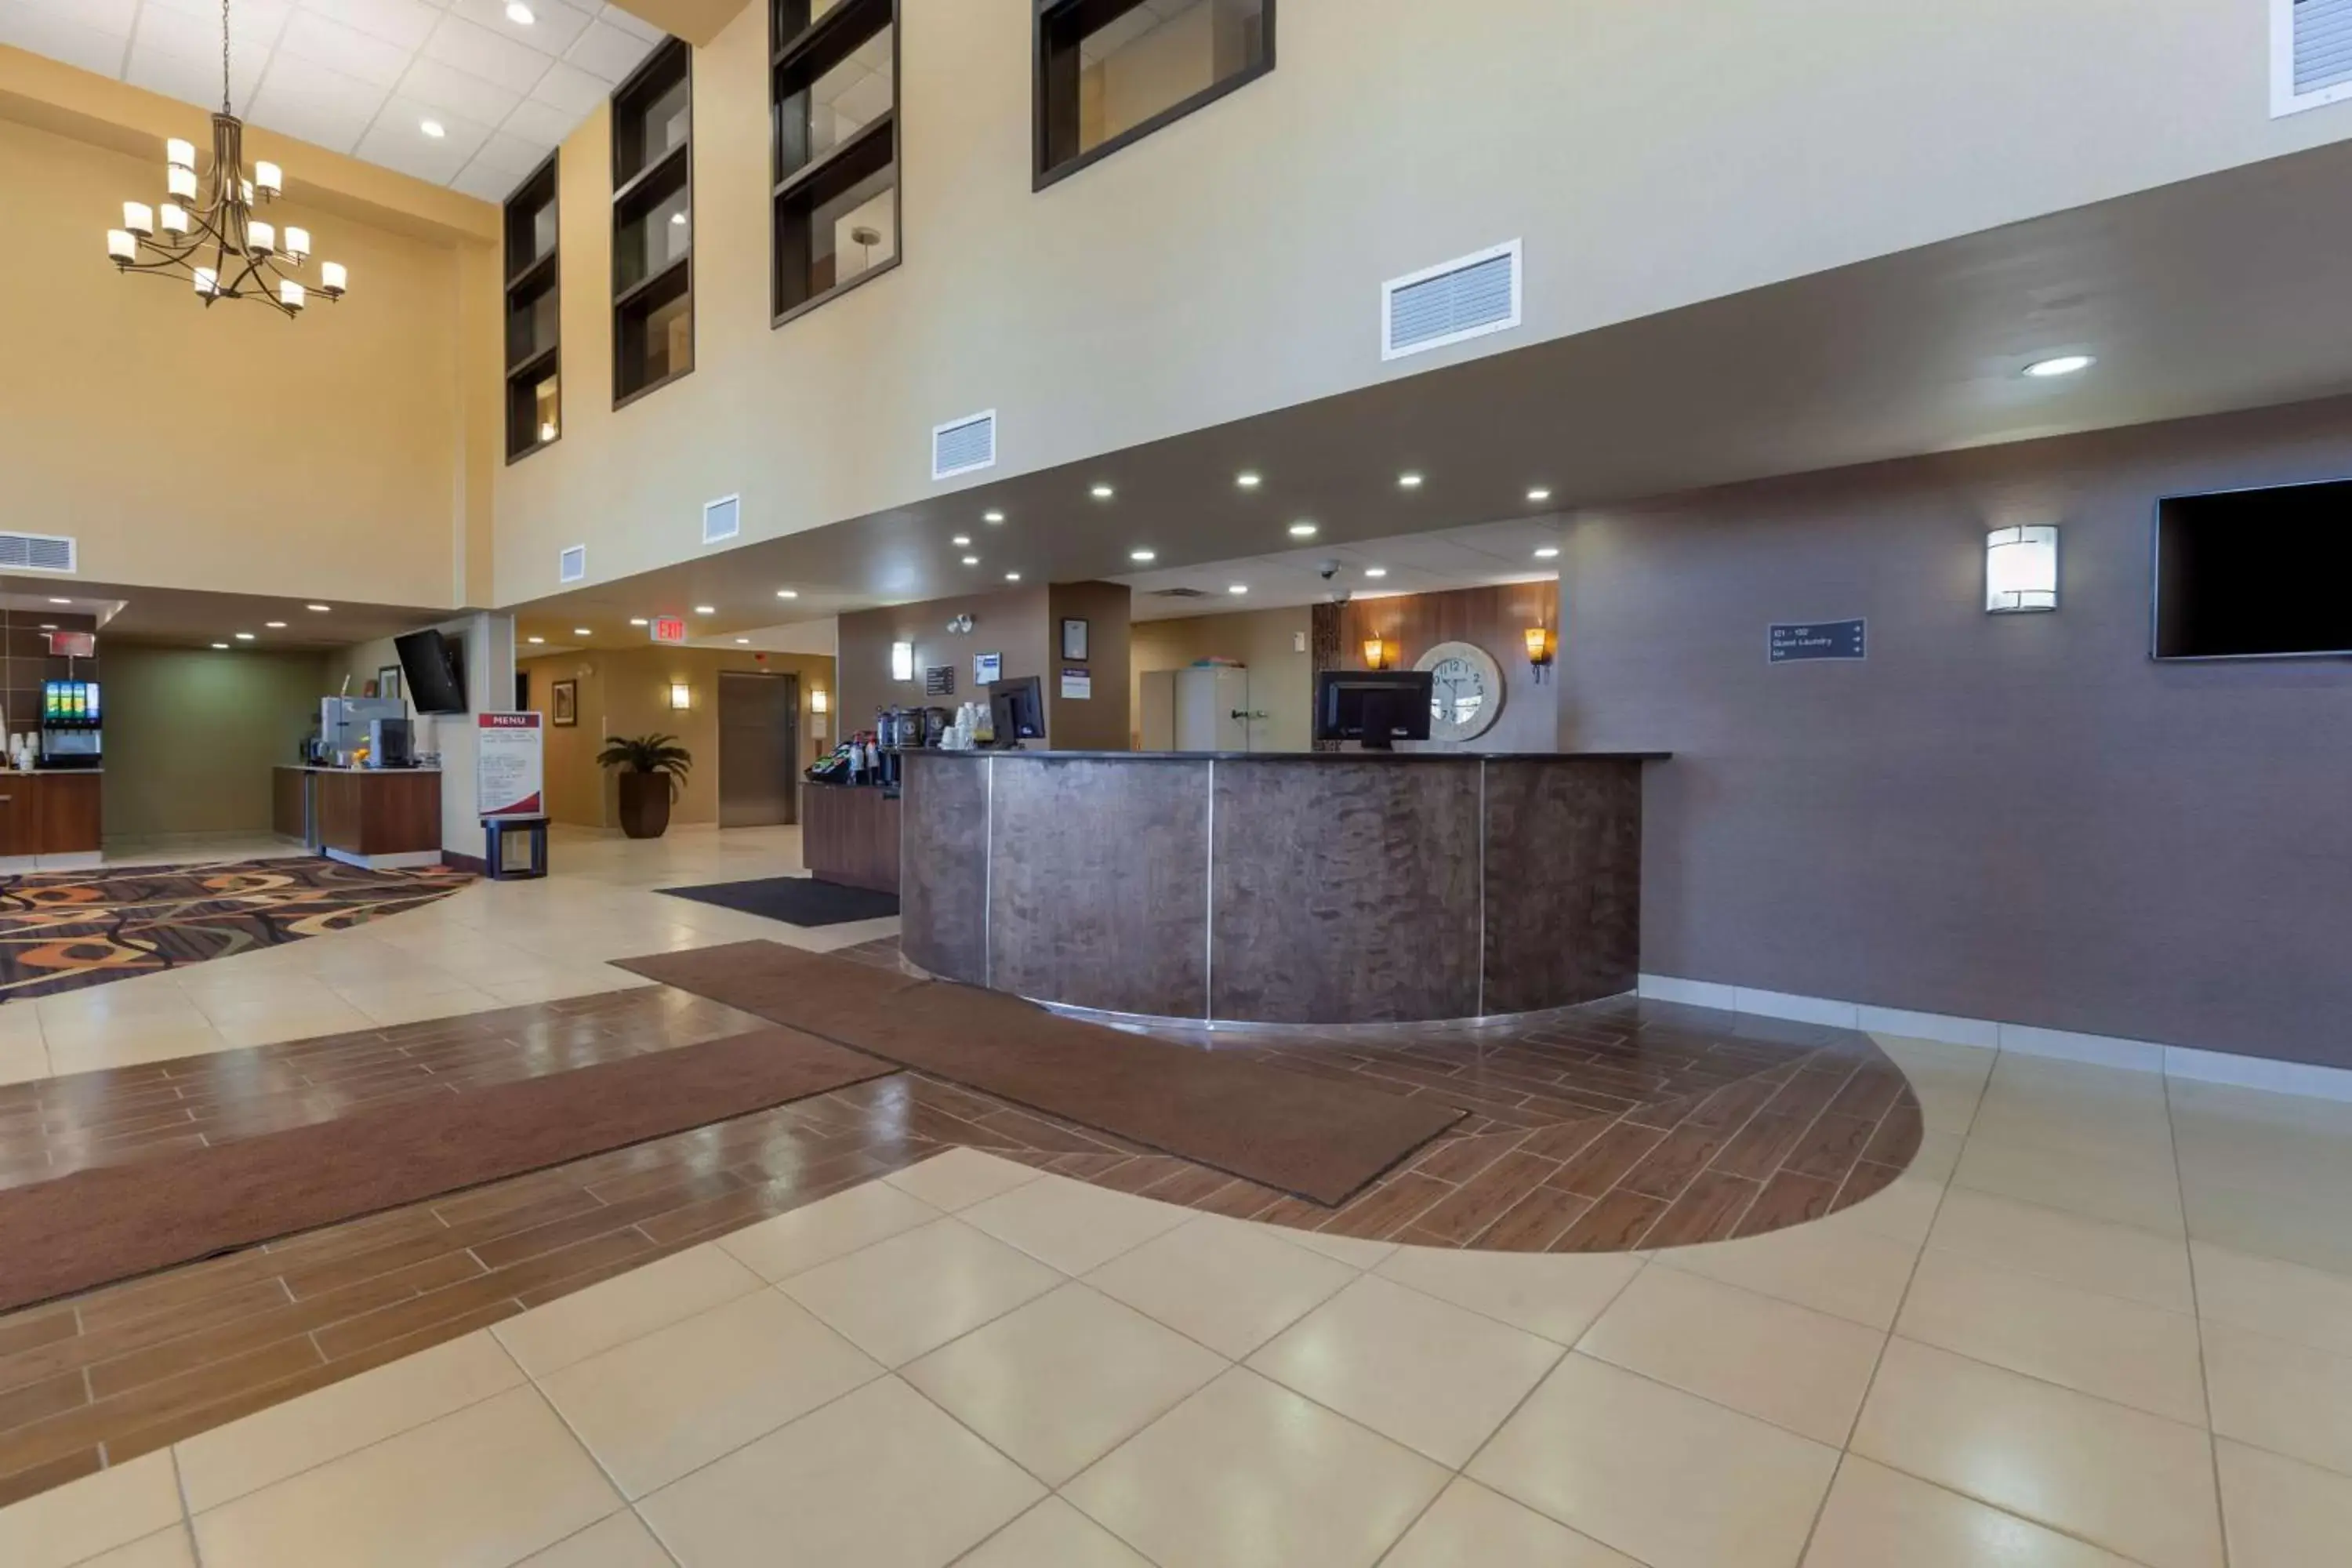 Lobby or reception, Lobby/Reception in Best Western PLUS Fox Creek